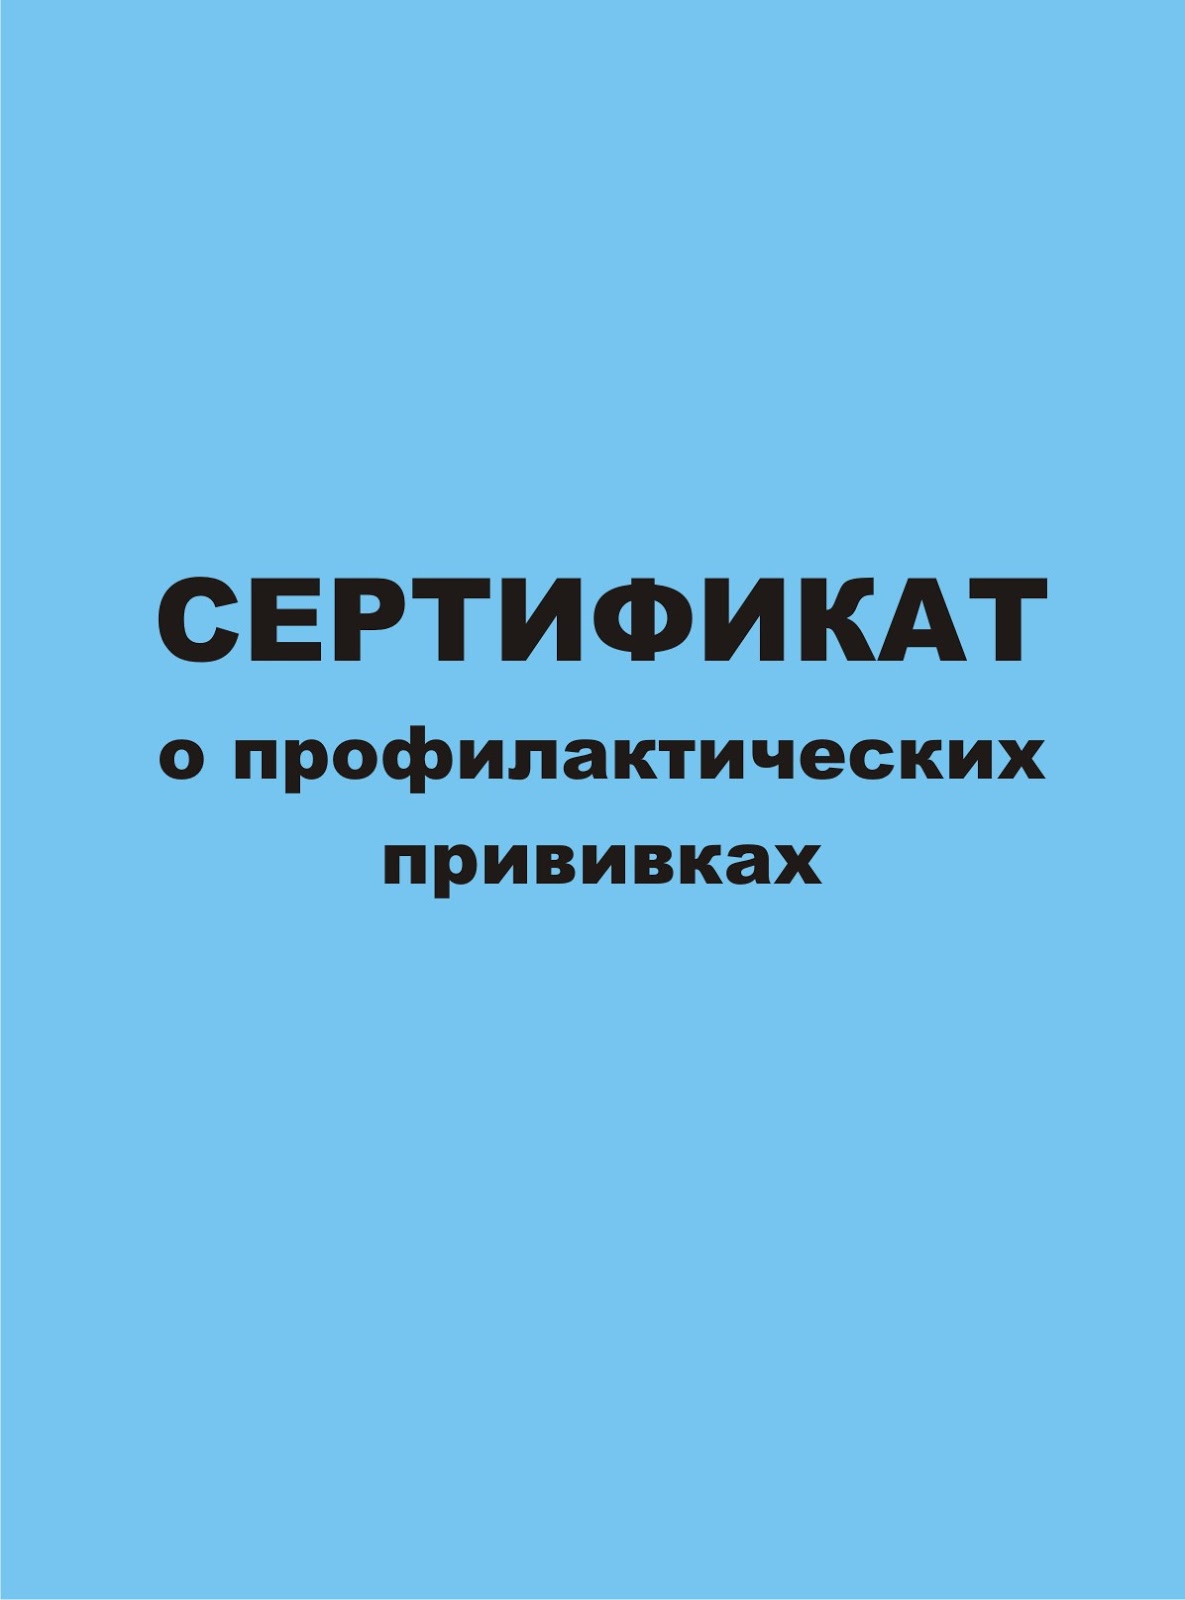 Где Купить Прививочный Сертификат В Новосибирске